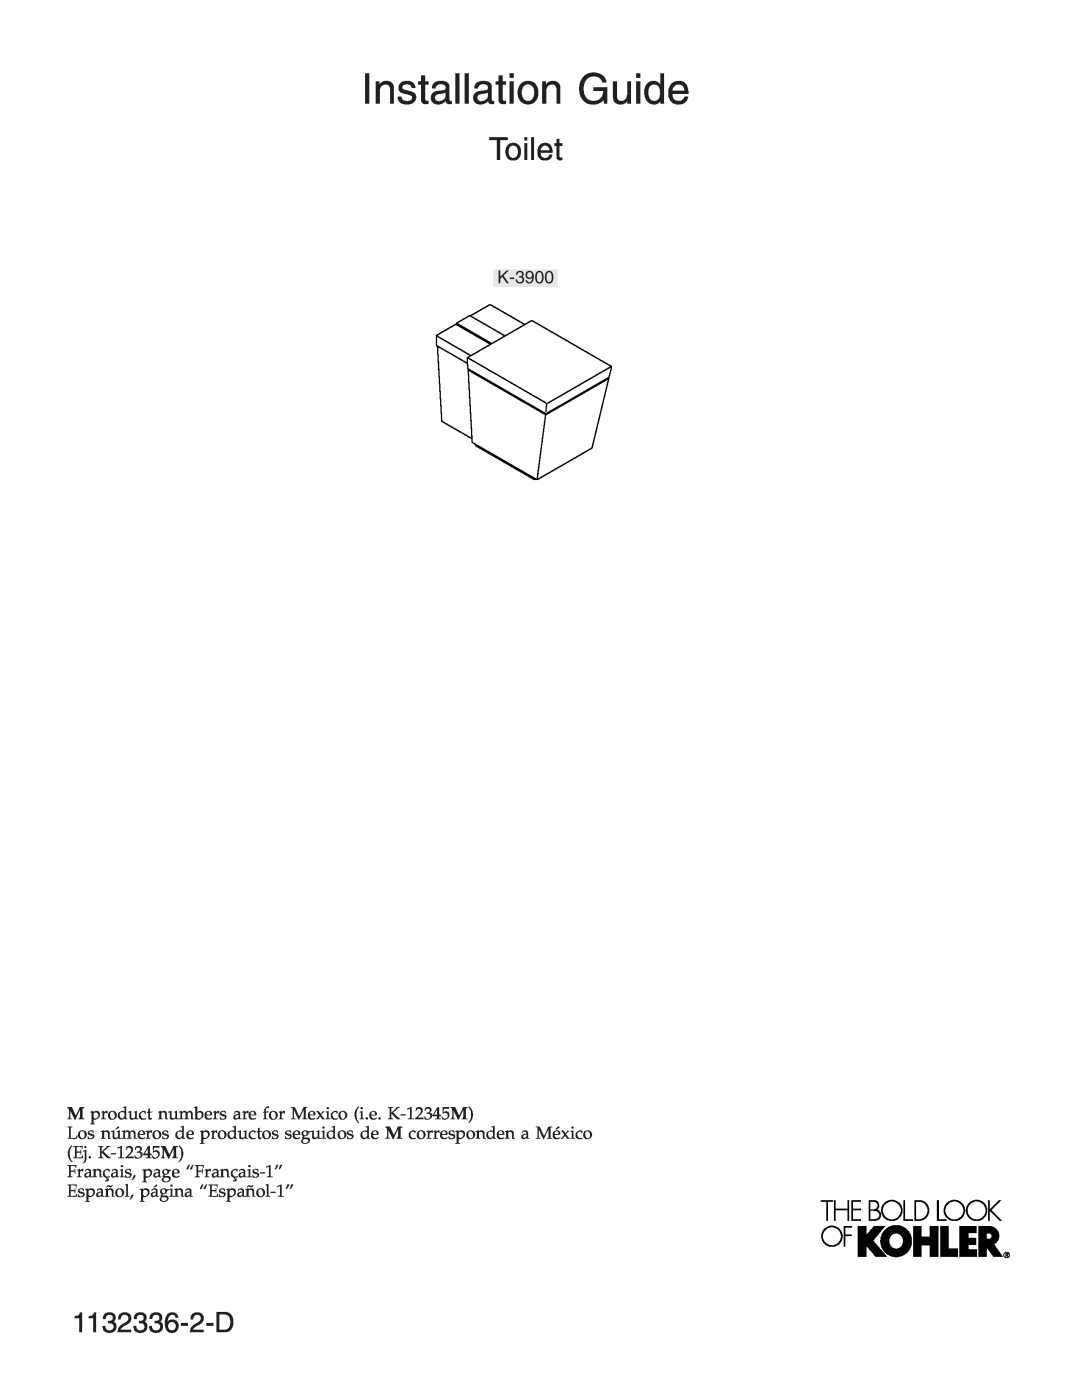 Kohler K-3900 manual Installation Guide, Toilet, 1132336-2-D 